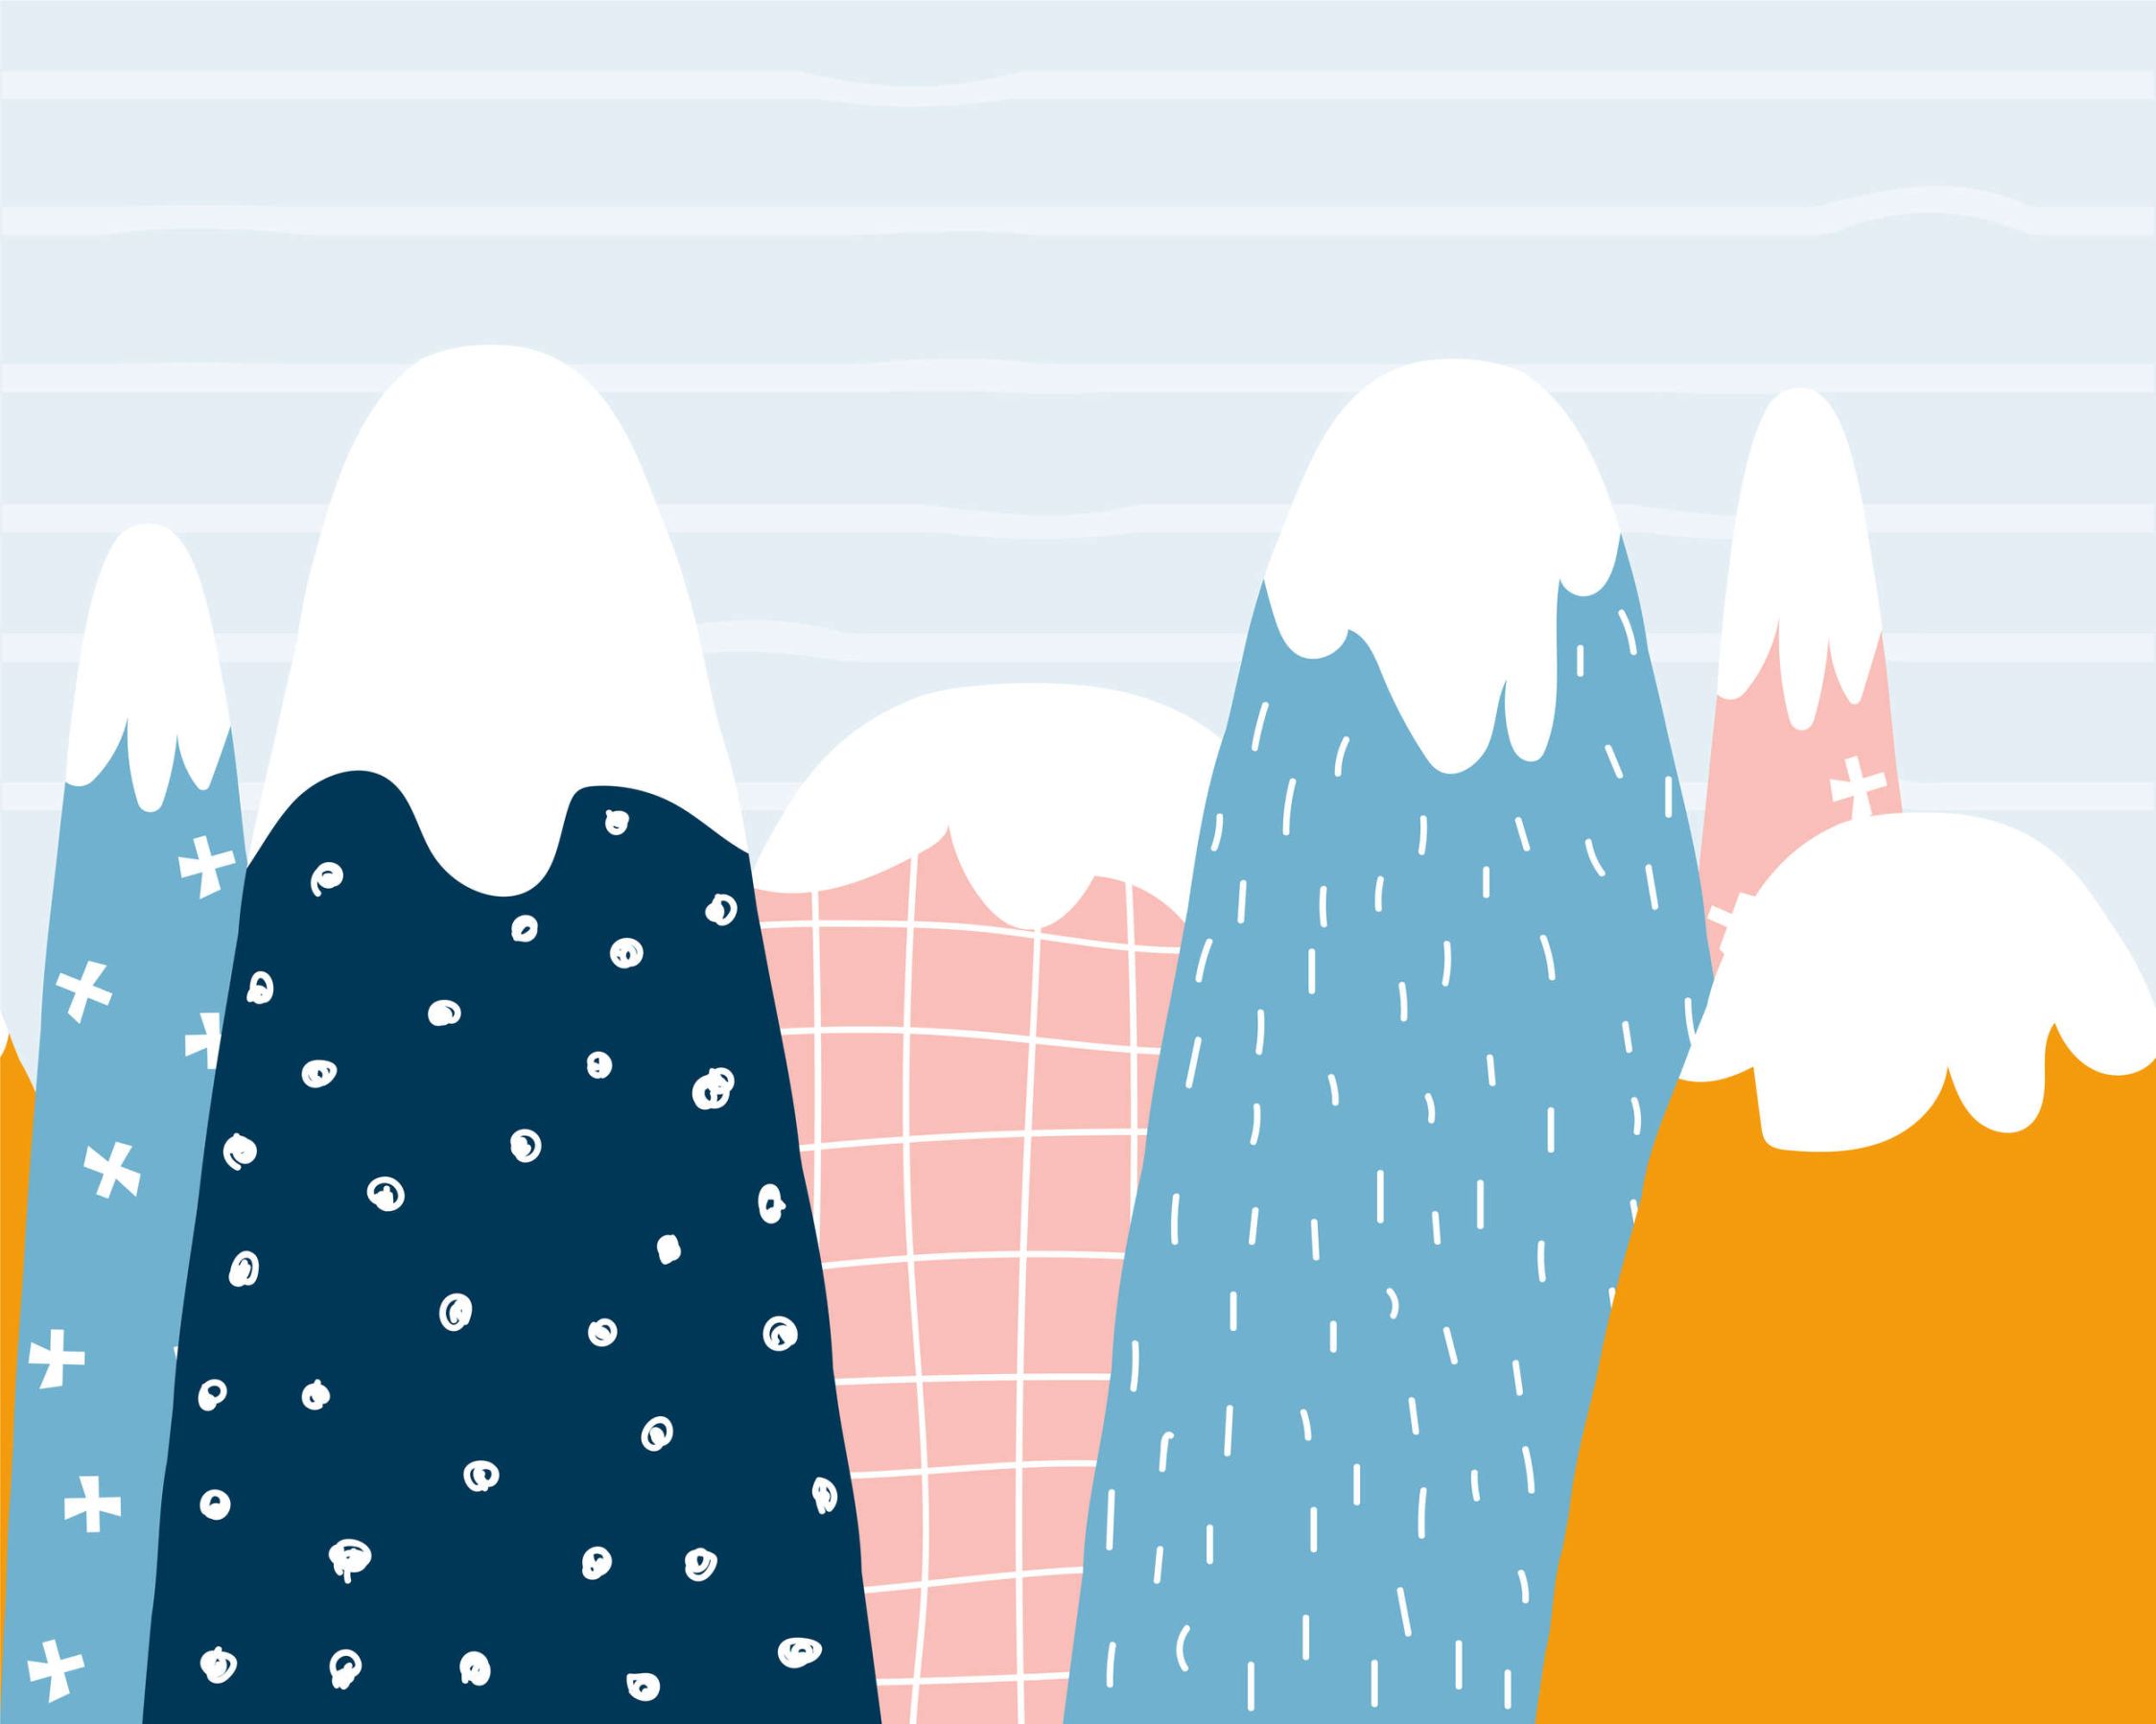             Fototapete mit verschneiten Hügeln im gemalten Stil – Glattes & perlmutt-schimmerndes Vlies
        